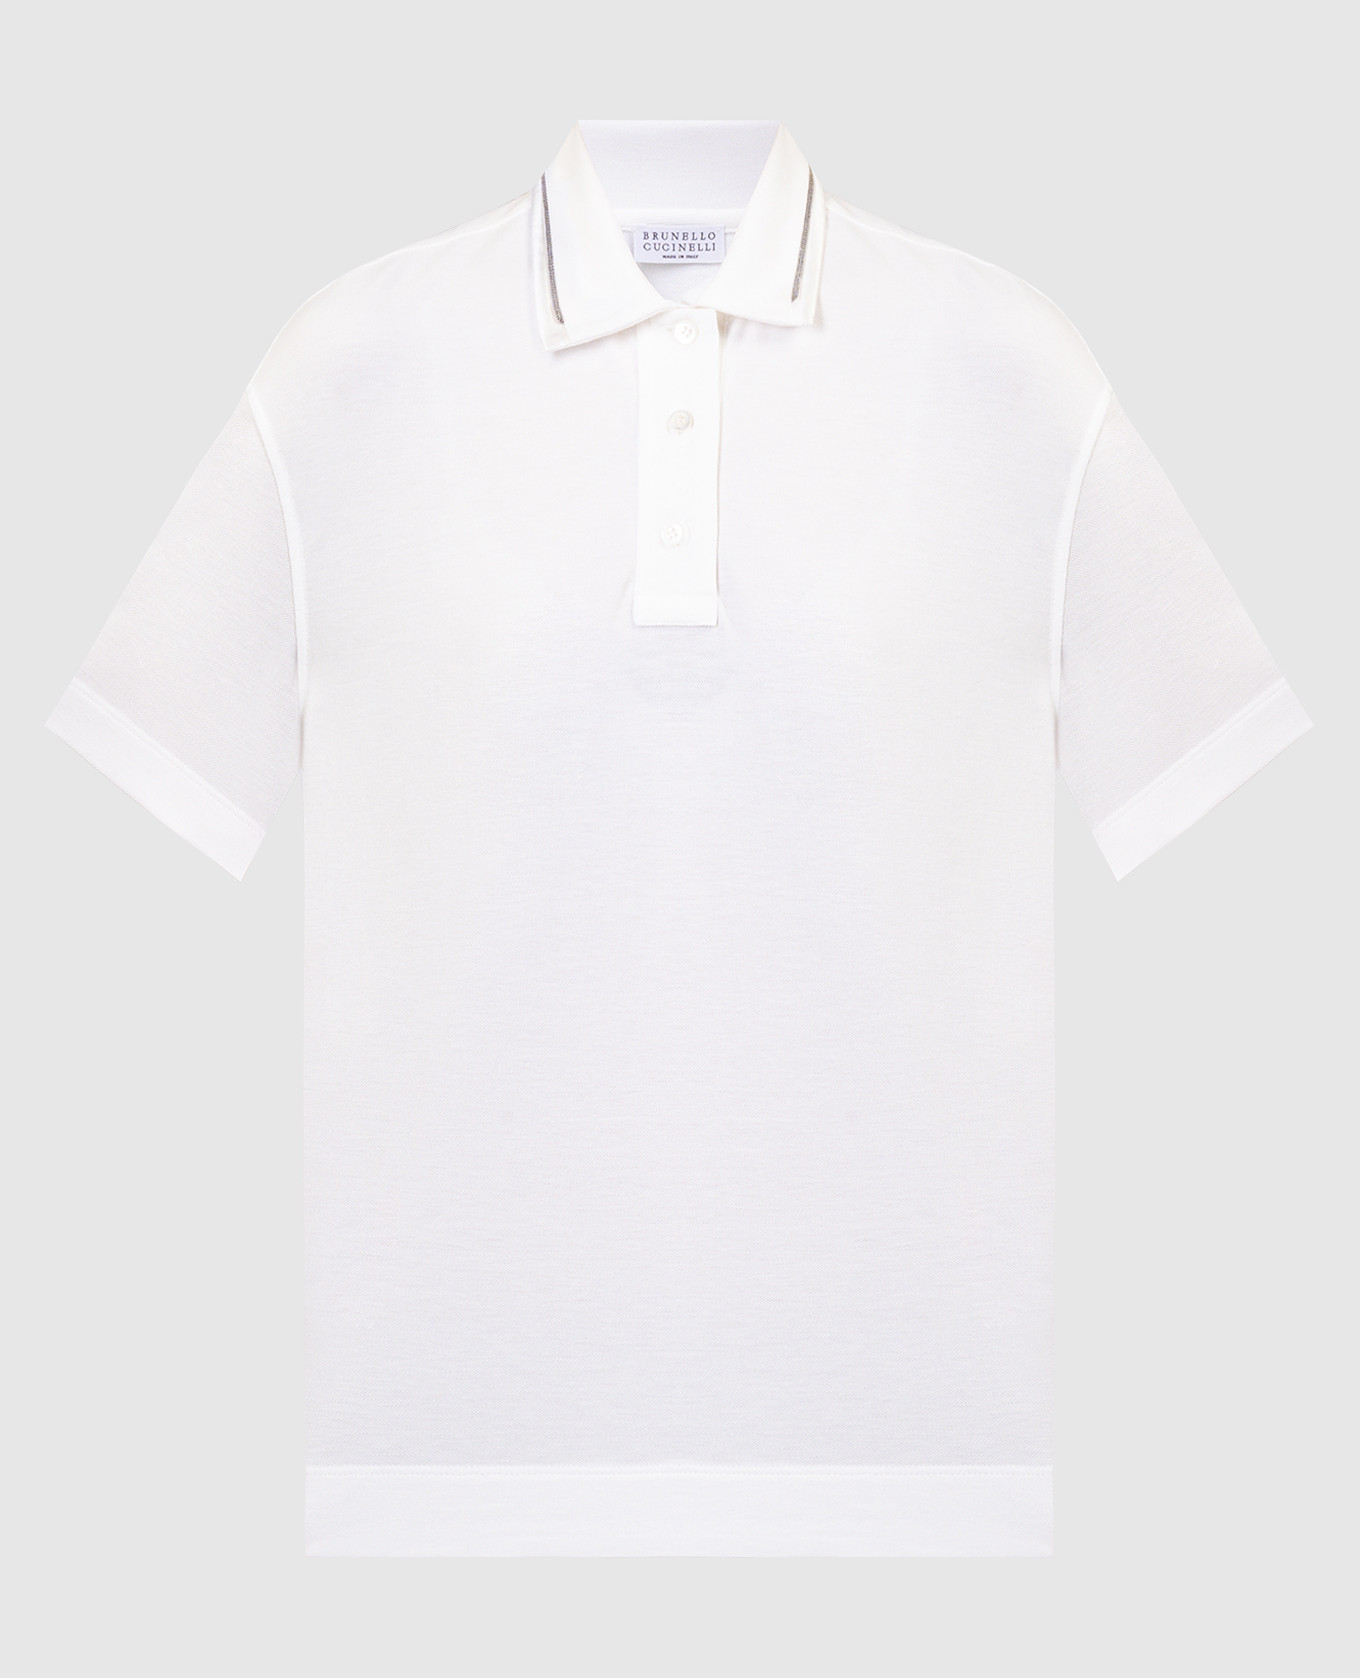 White polo shirt with monil chain